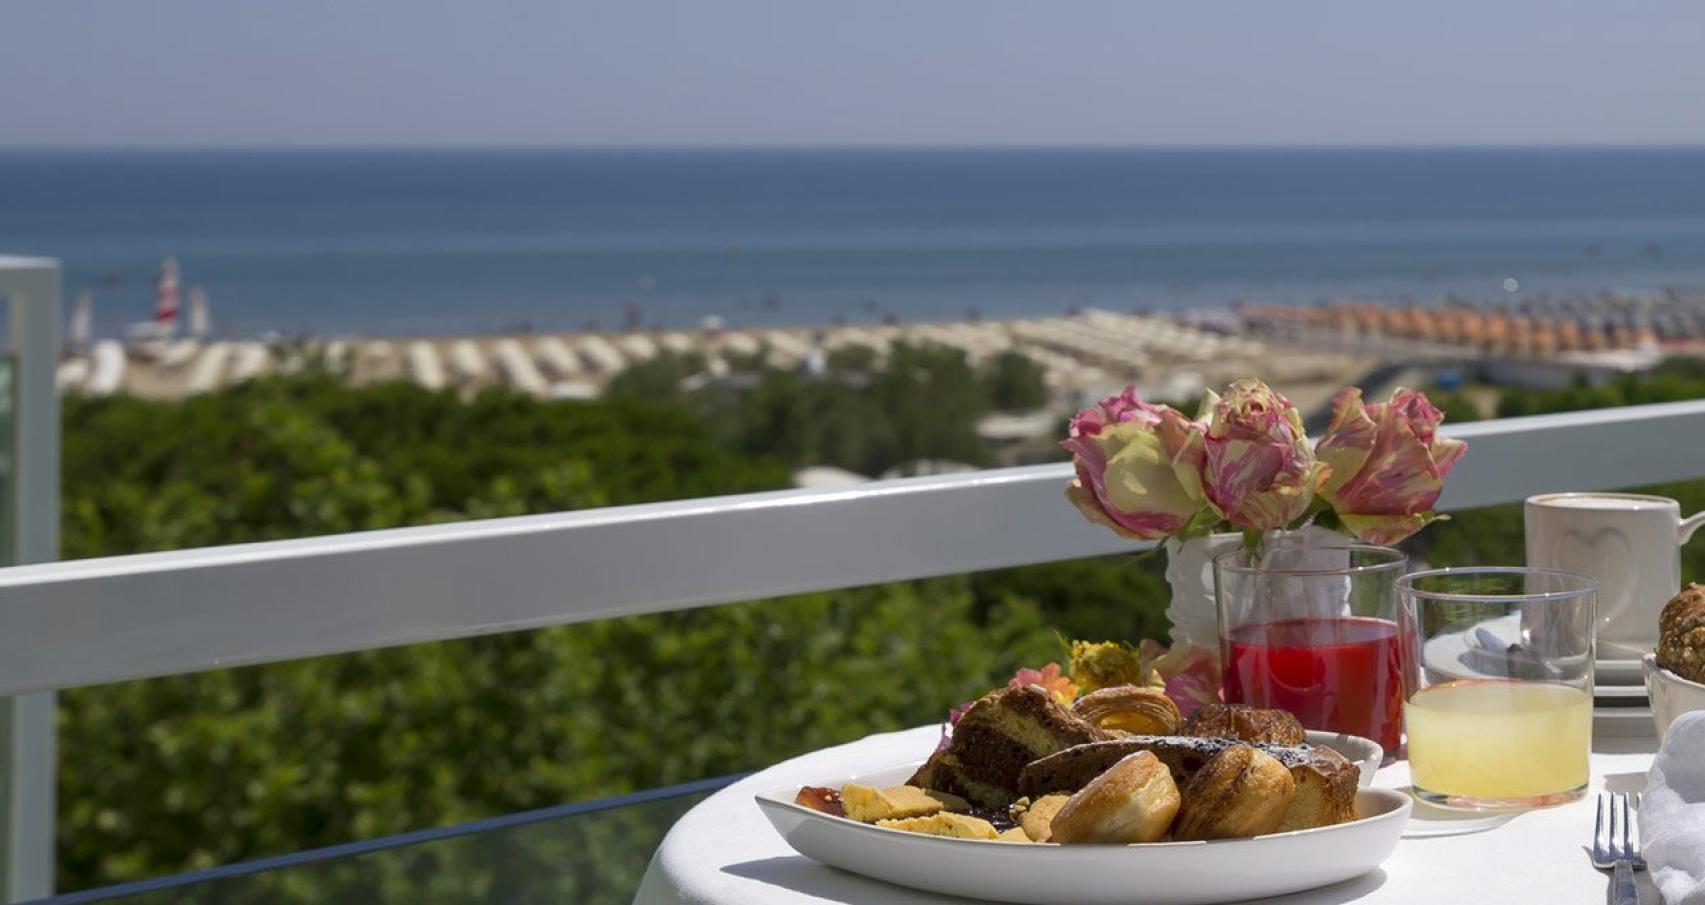 Colazione con vista mare, dolci e bevande su un balcone soleggiato.